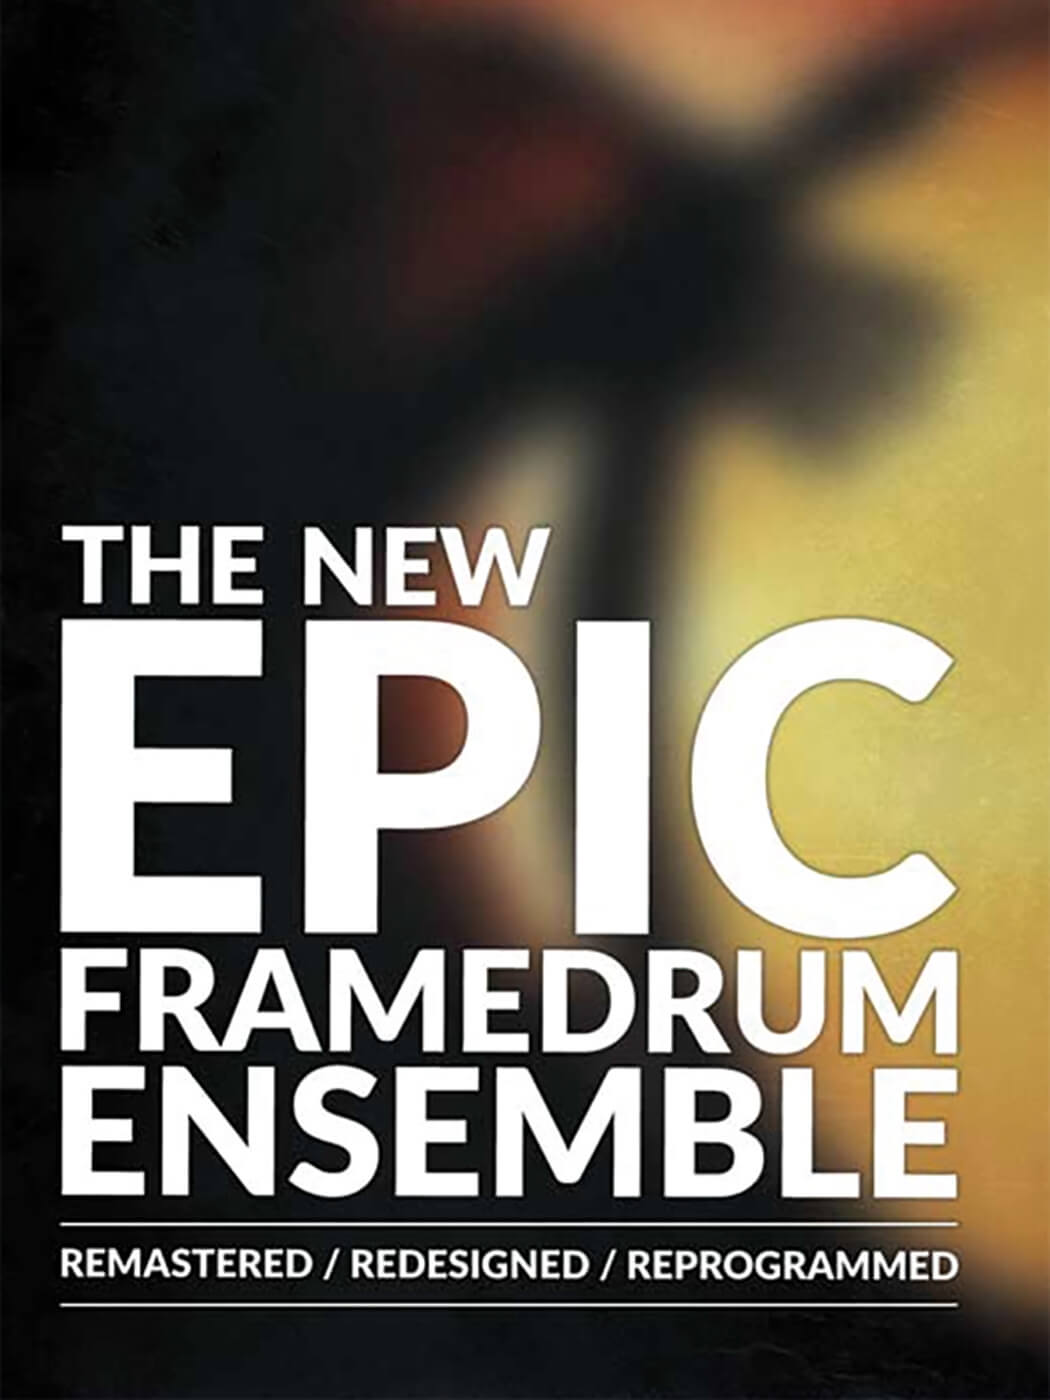 8dio The New Epic Frame Drum Ensemble